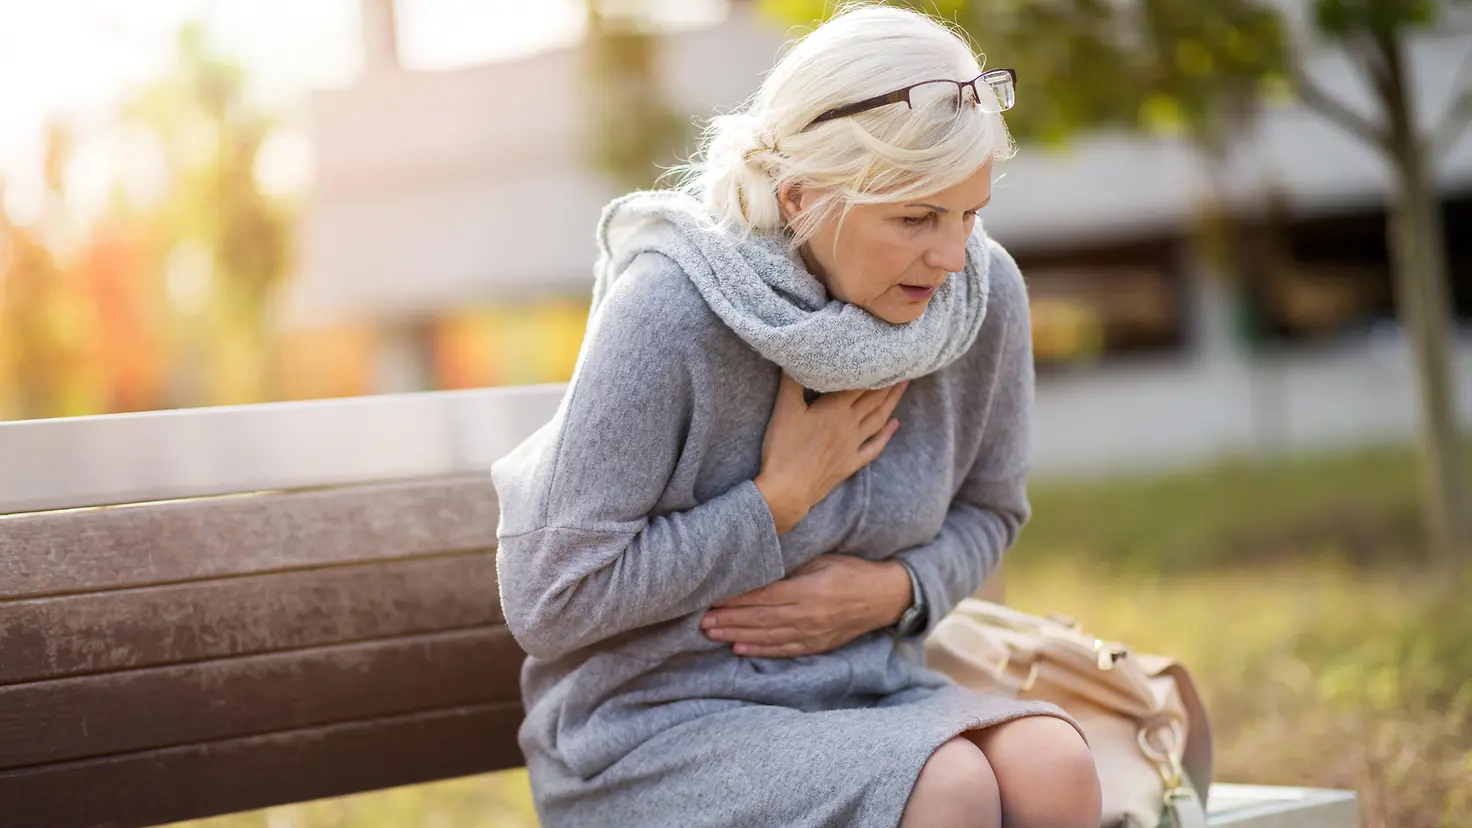 Das Bild zeigt eine Frau, die auf einer Bank sitzt und Symptome eines Herzinfarktes hat.